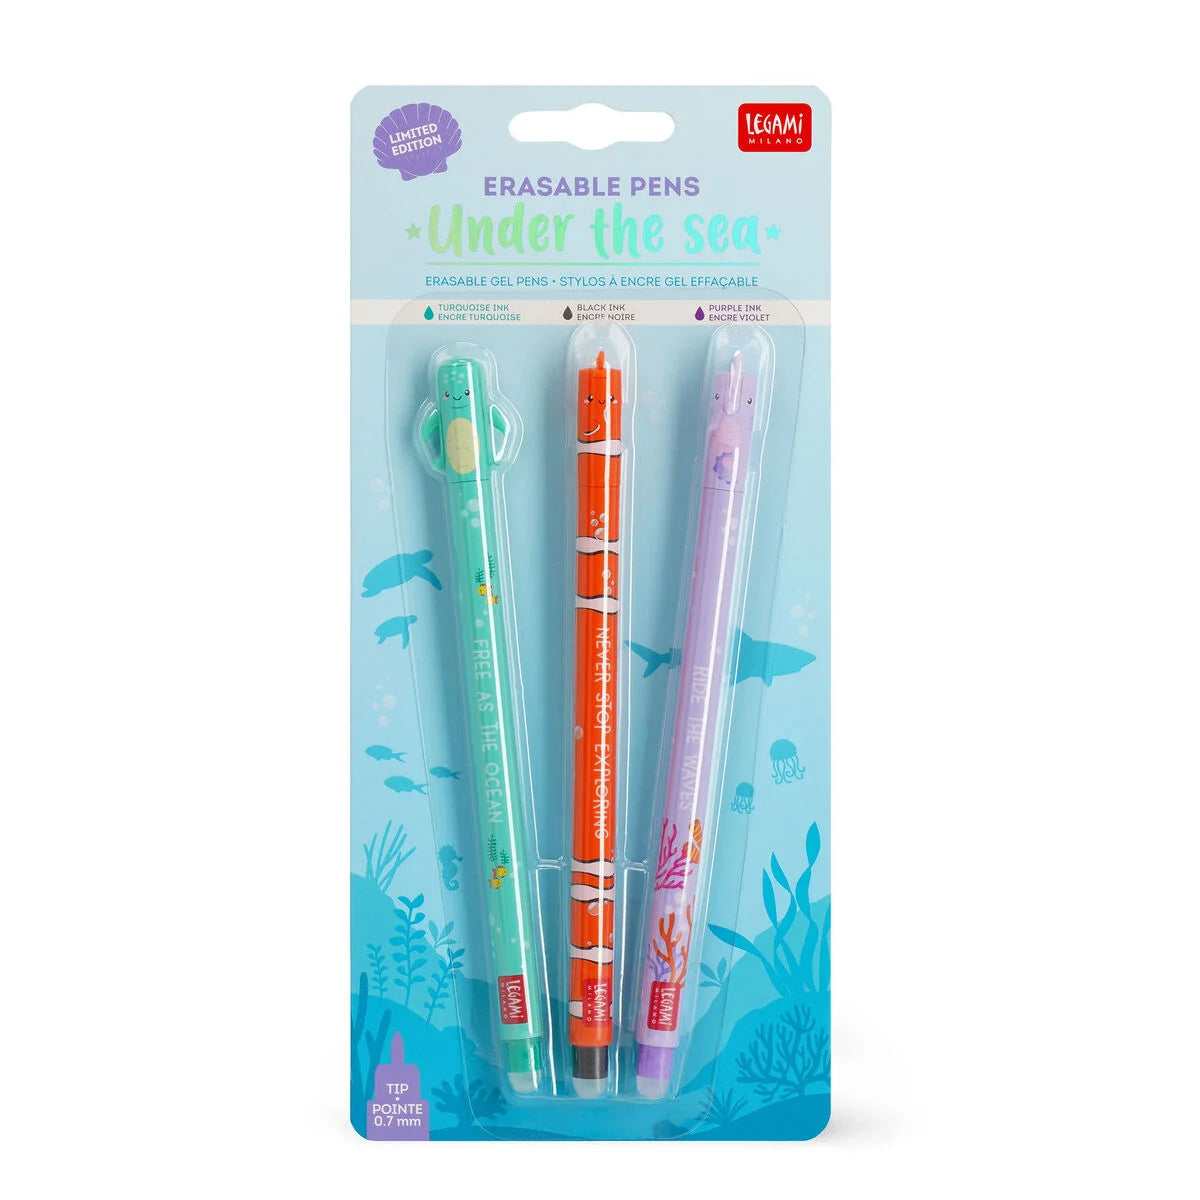 PRE-SALE Set of 3 Erasable Gel Pens - Under the Sea - Legami